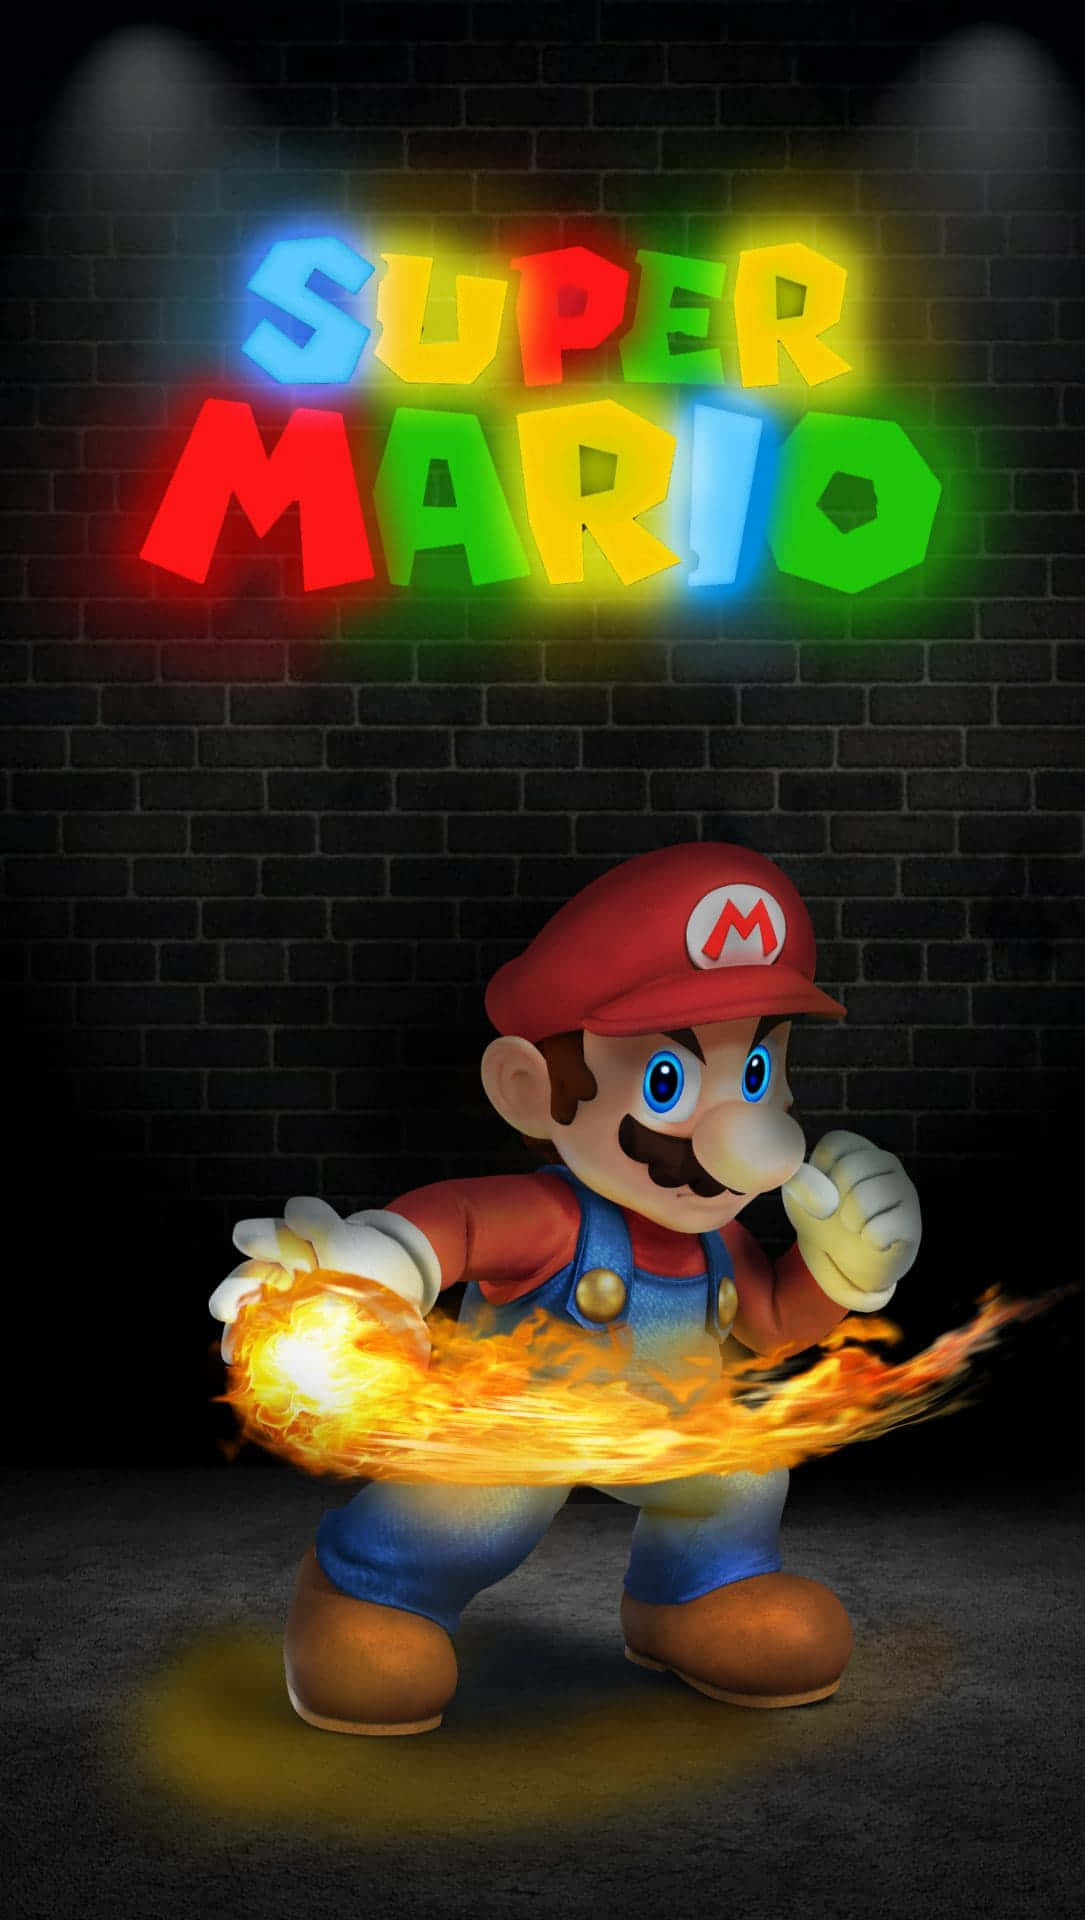 50 Super Mario Wallpaper iPhone  WallpaperSafari